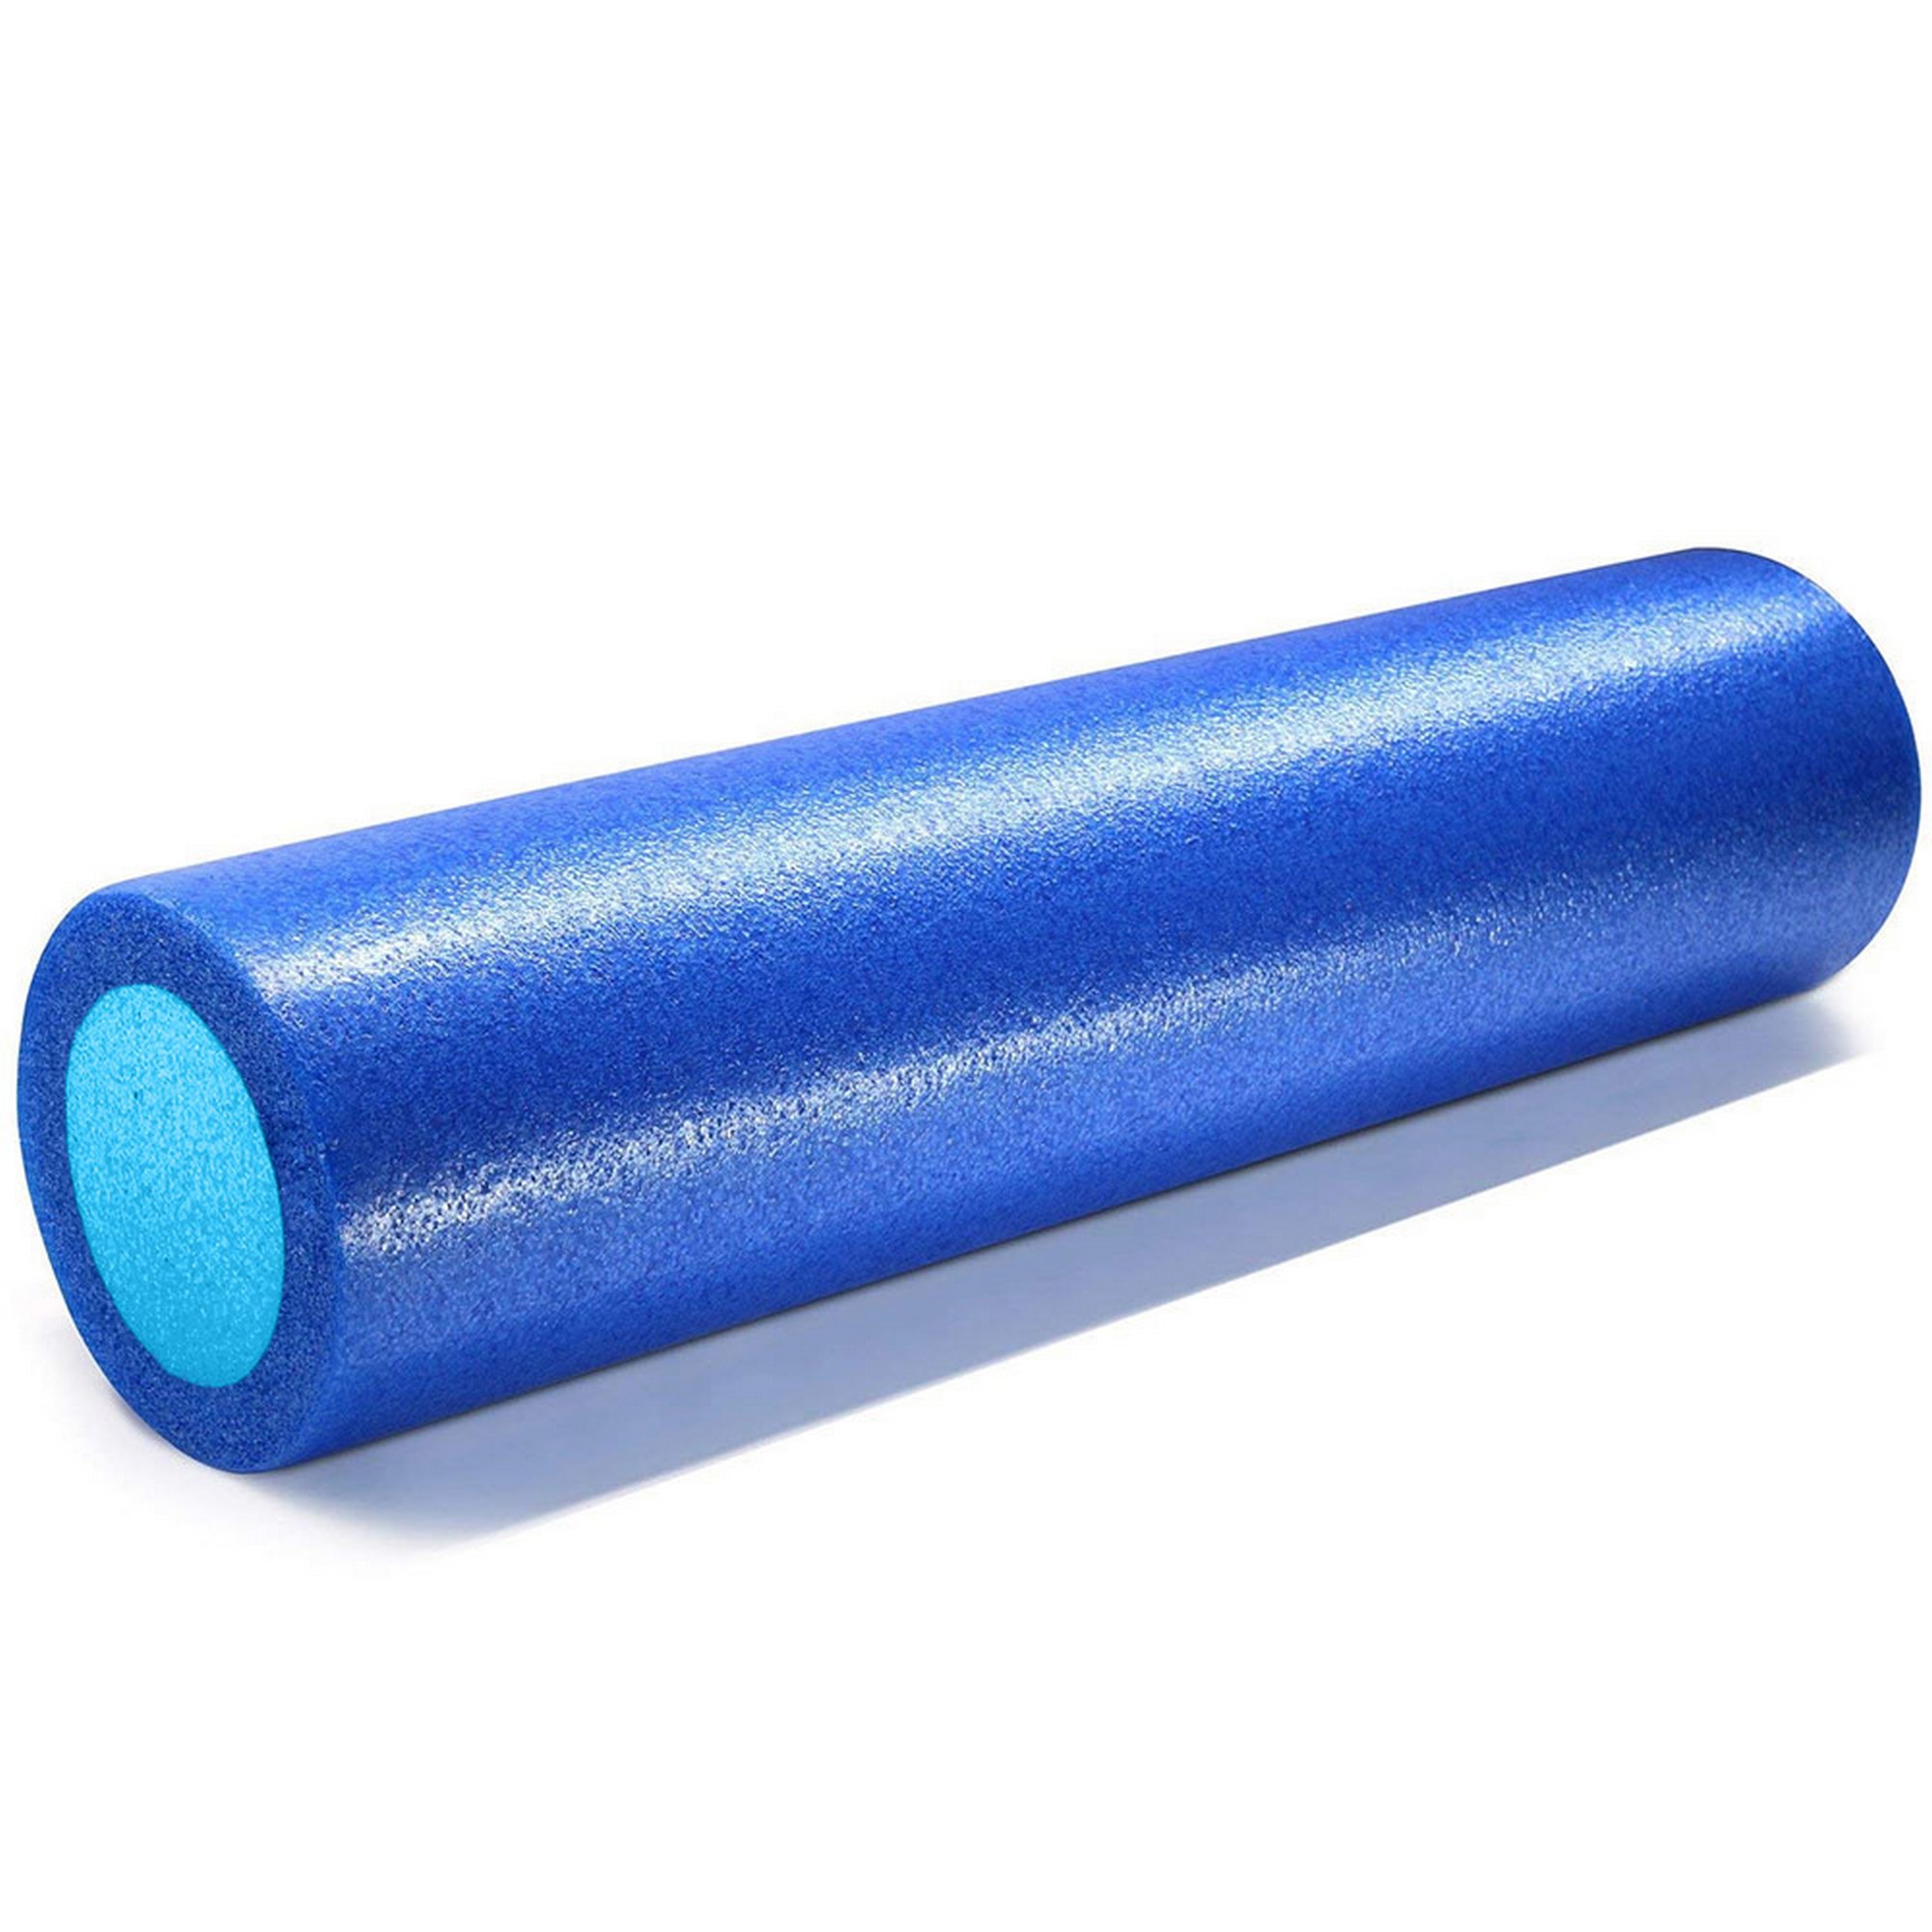 Ролик для йоги полнотелый 2-х цветный, 60х15см Sportex PEF60-A синий\голубой 2000_2000